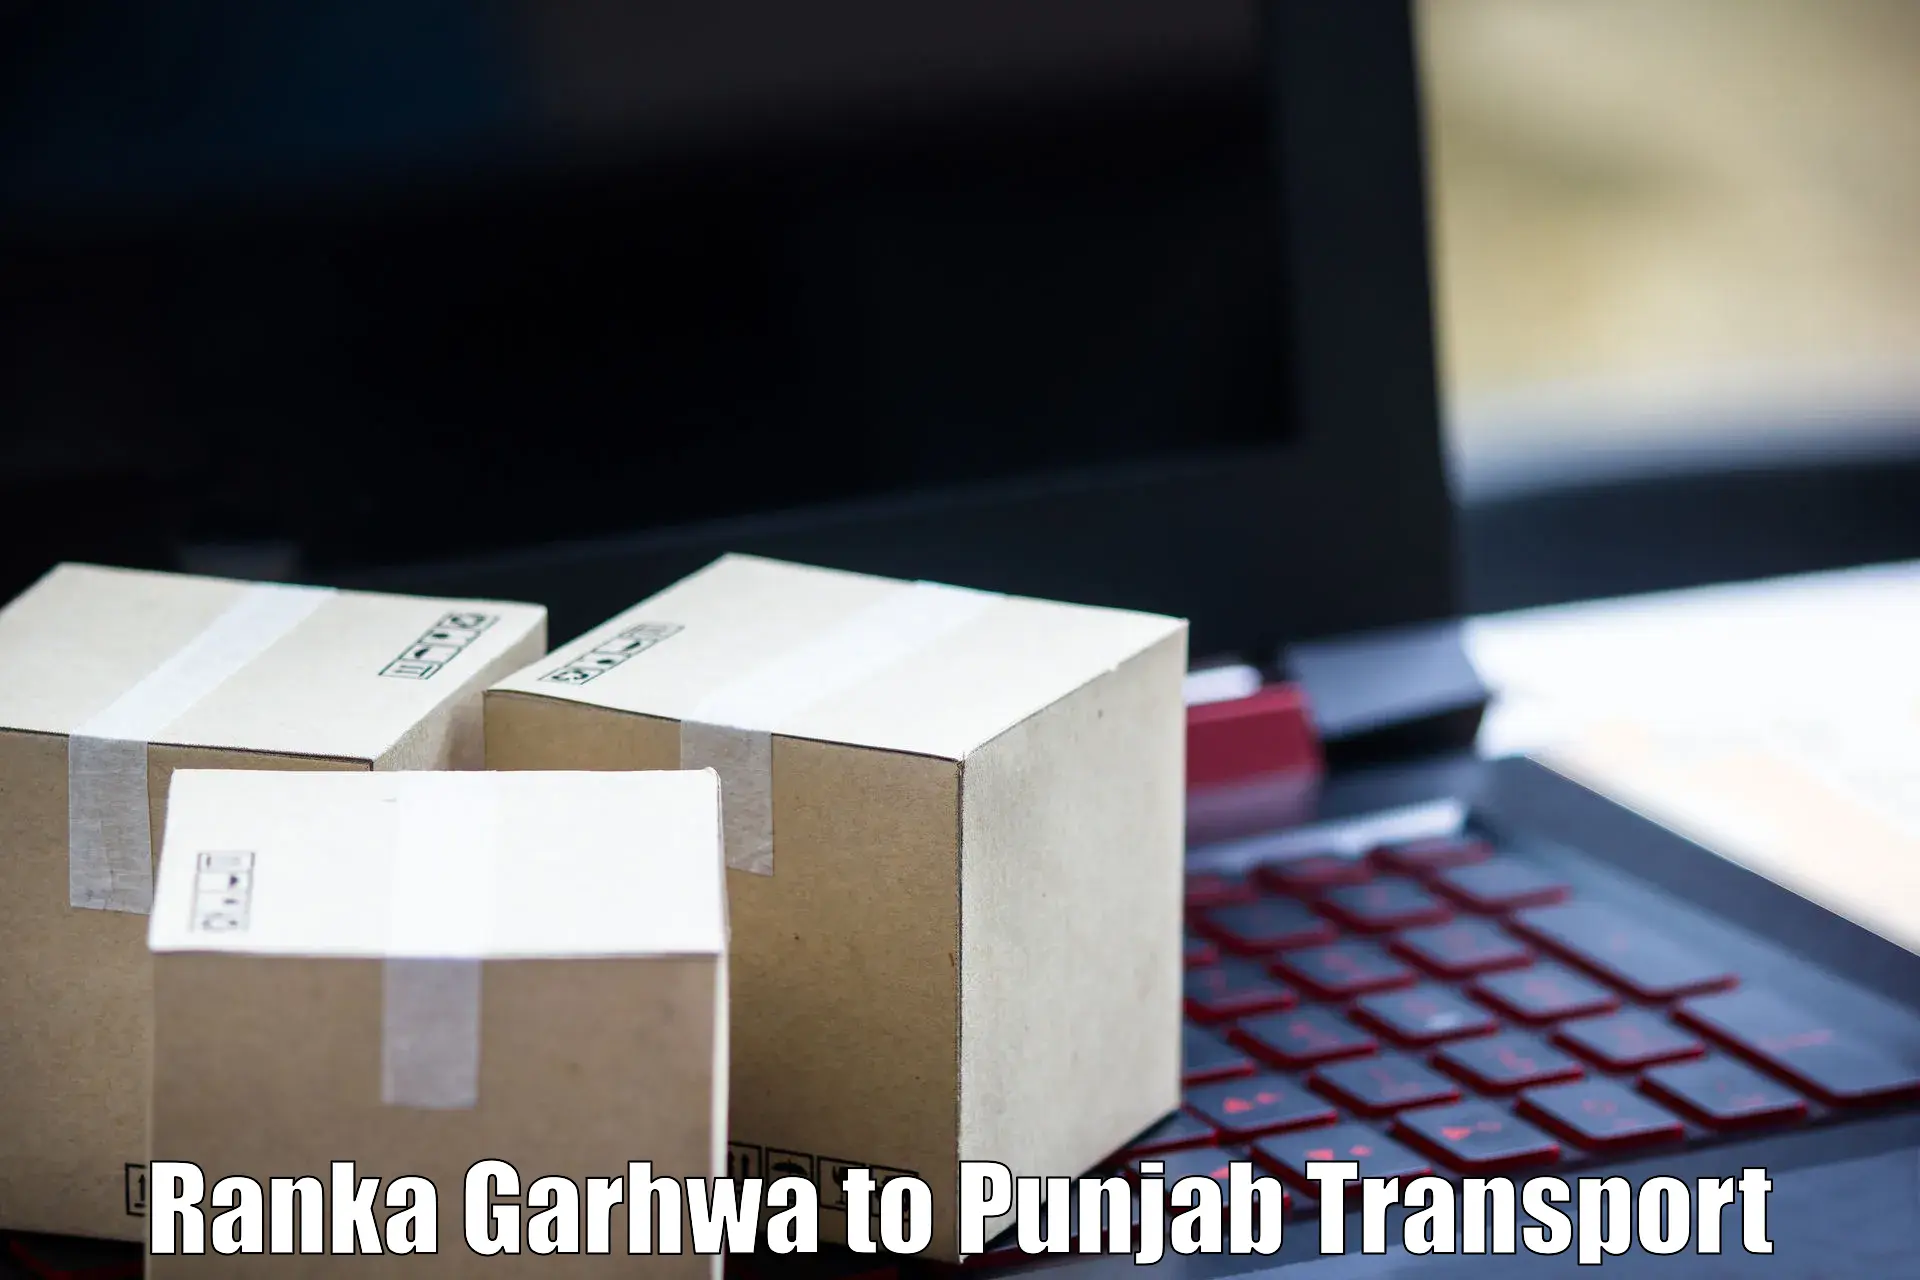 Bike shipping service Ranka Garhwa to Faridkot